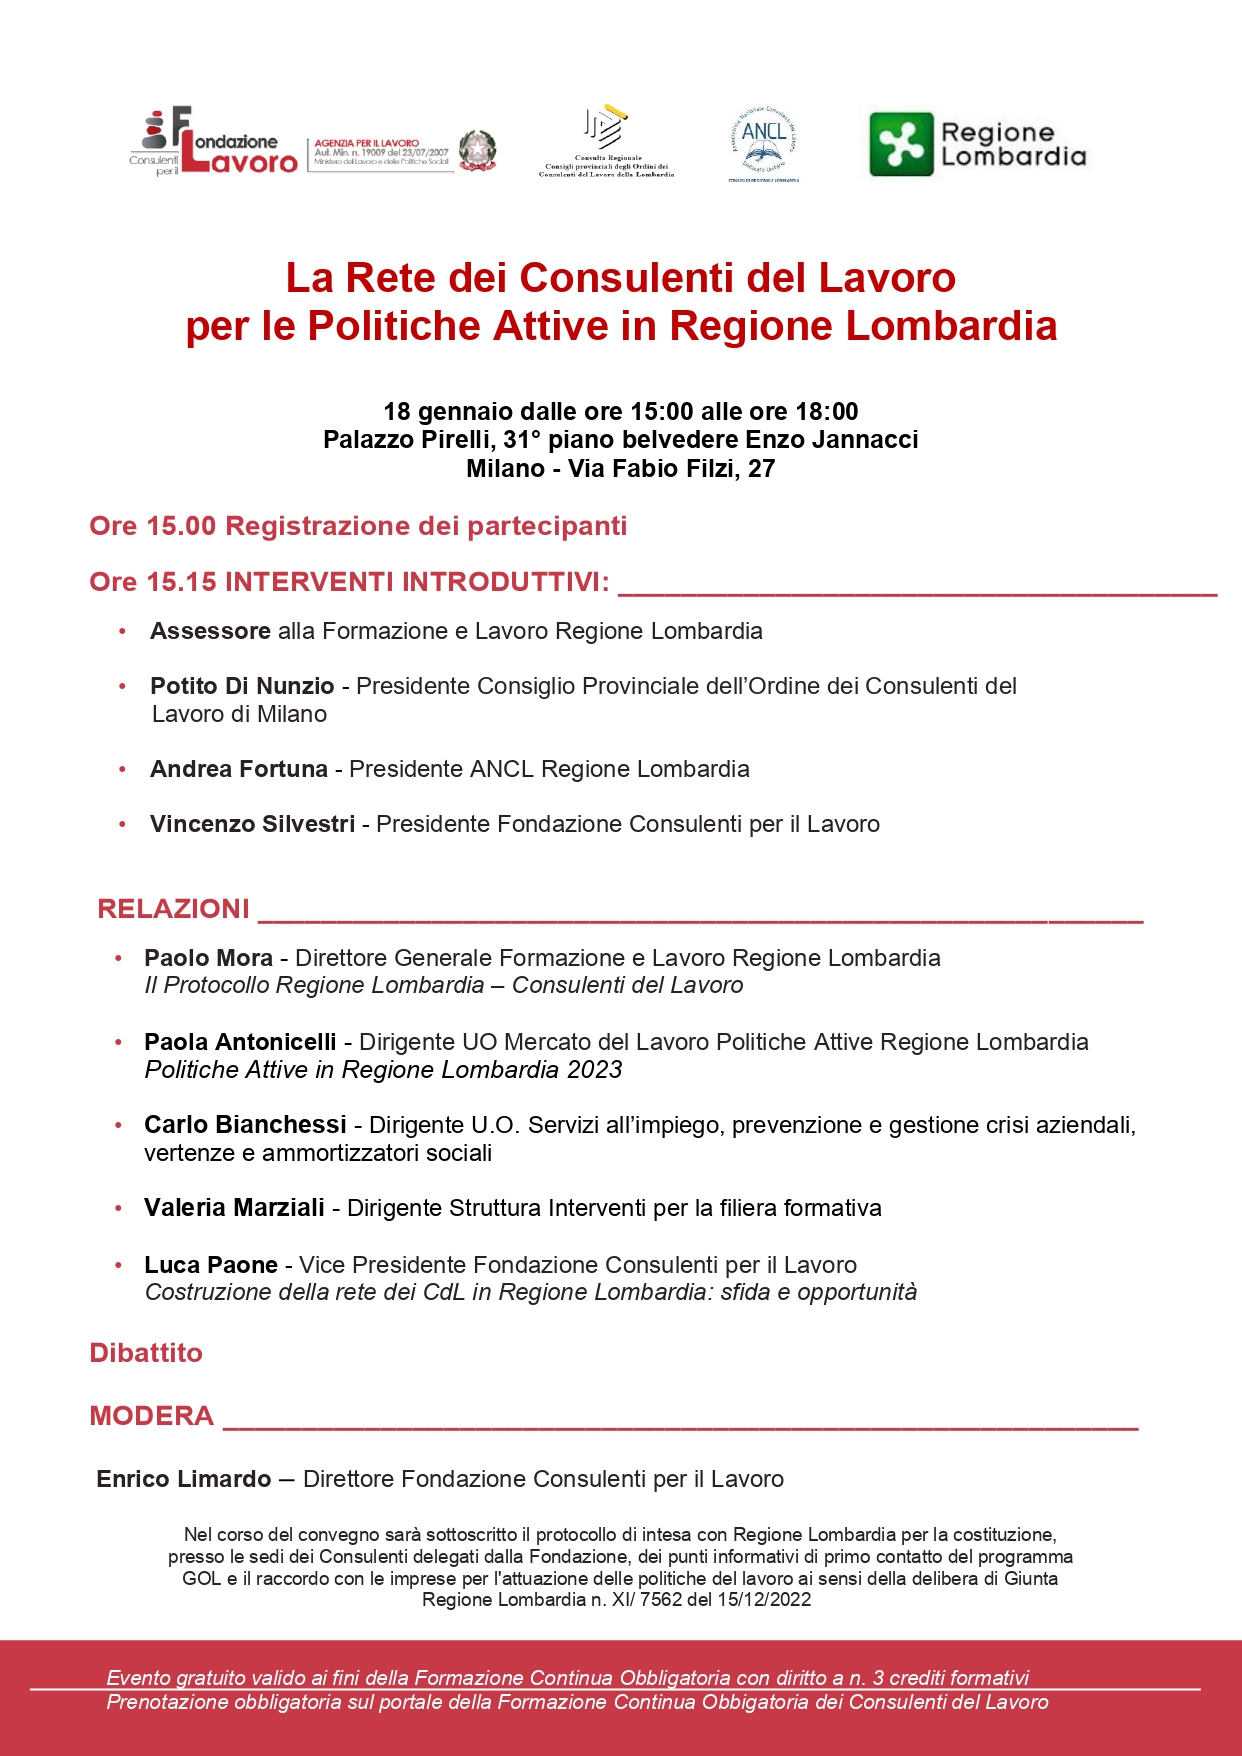 Convegno: "La Rete dei Consulenti del Lavoro per le Politiche Attive in Regione Lombardia" Milano, 18 gennaio 2023 ore 15:00 - 18:00